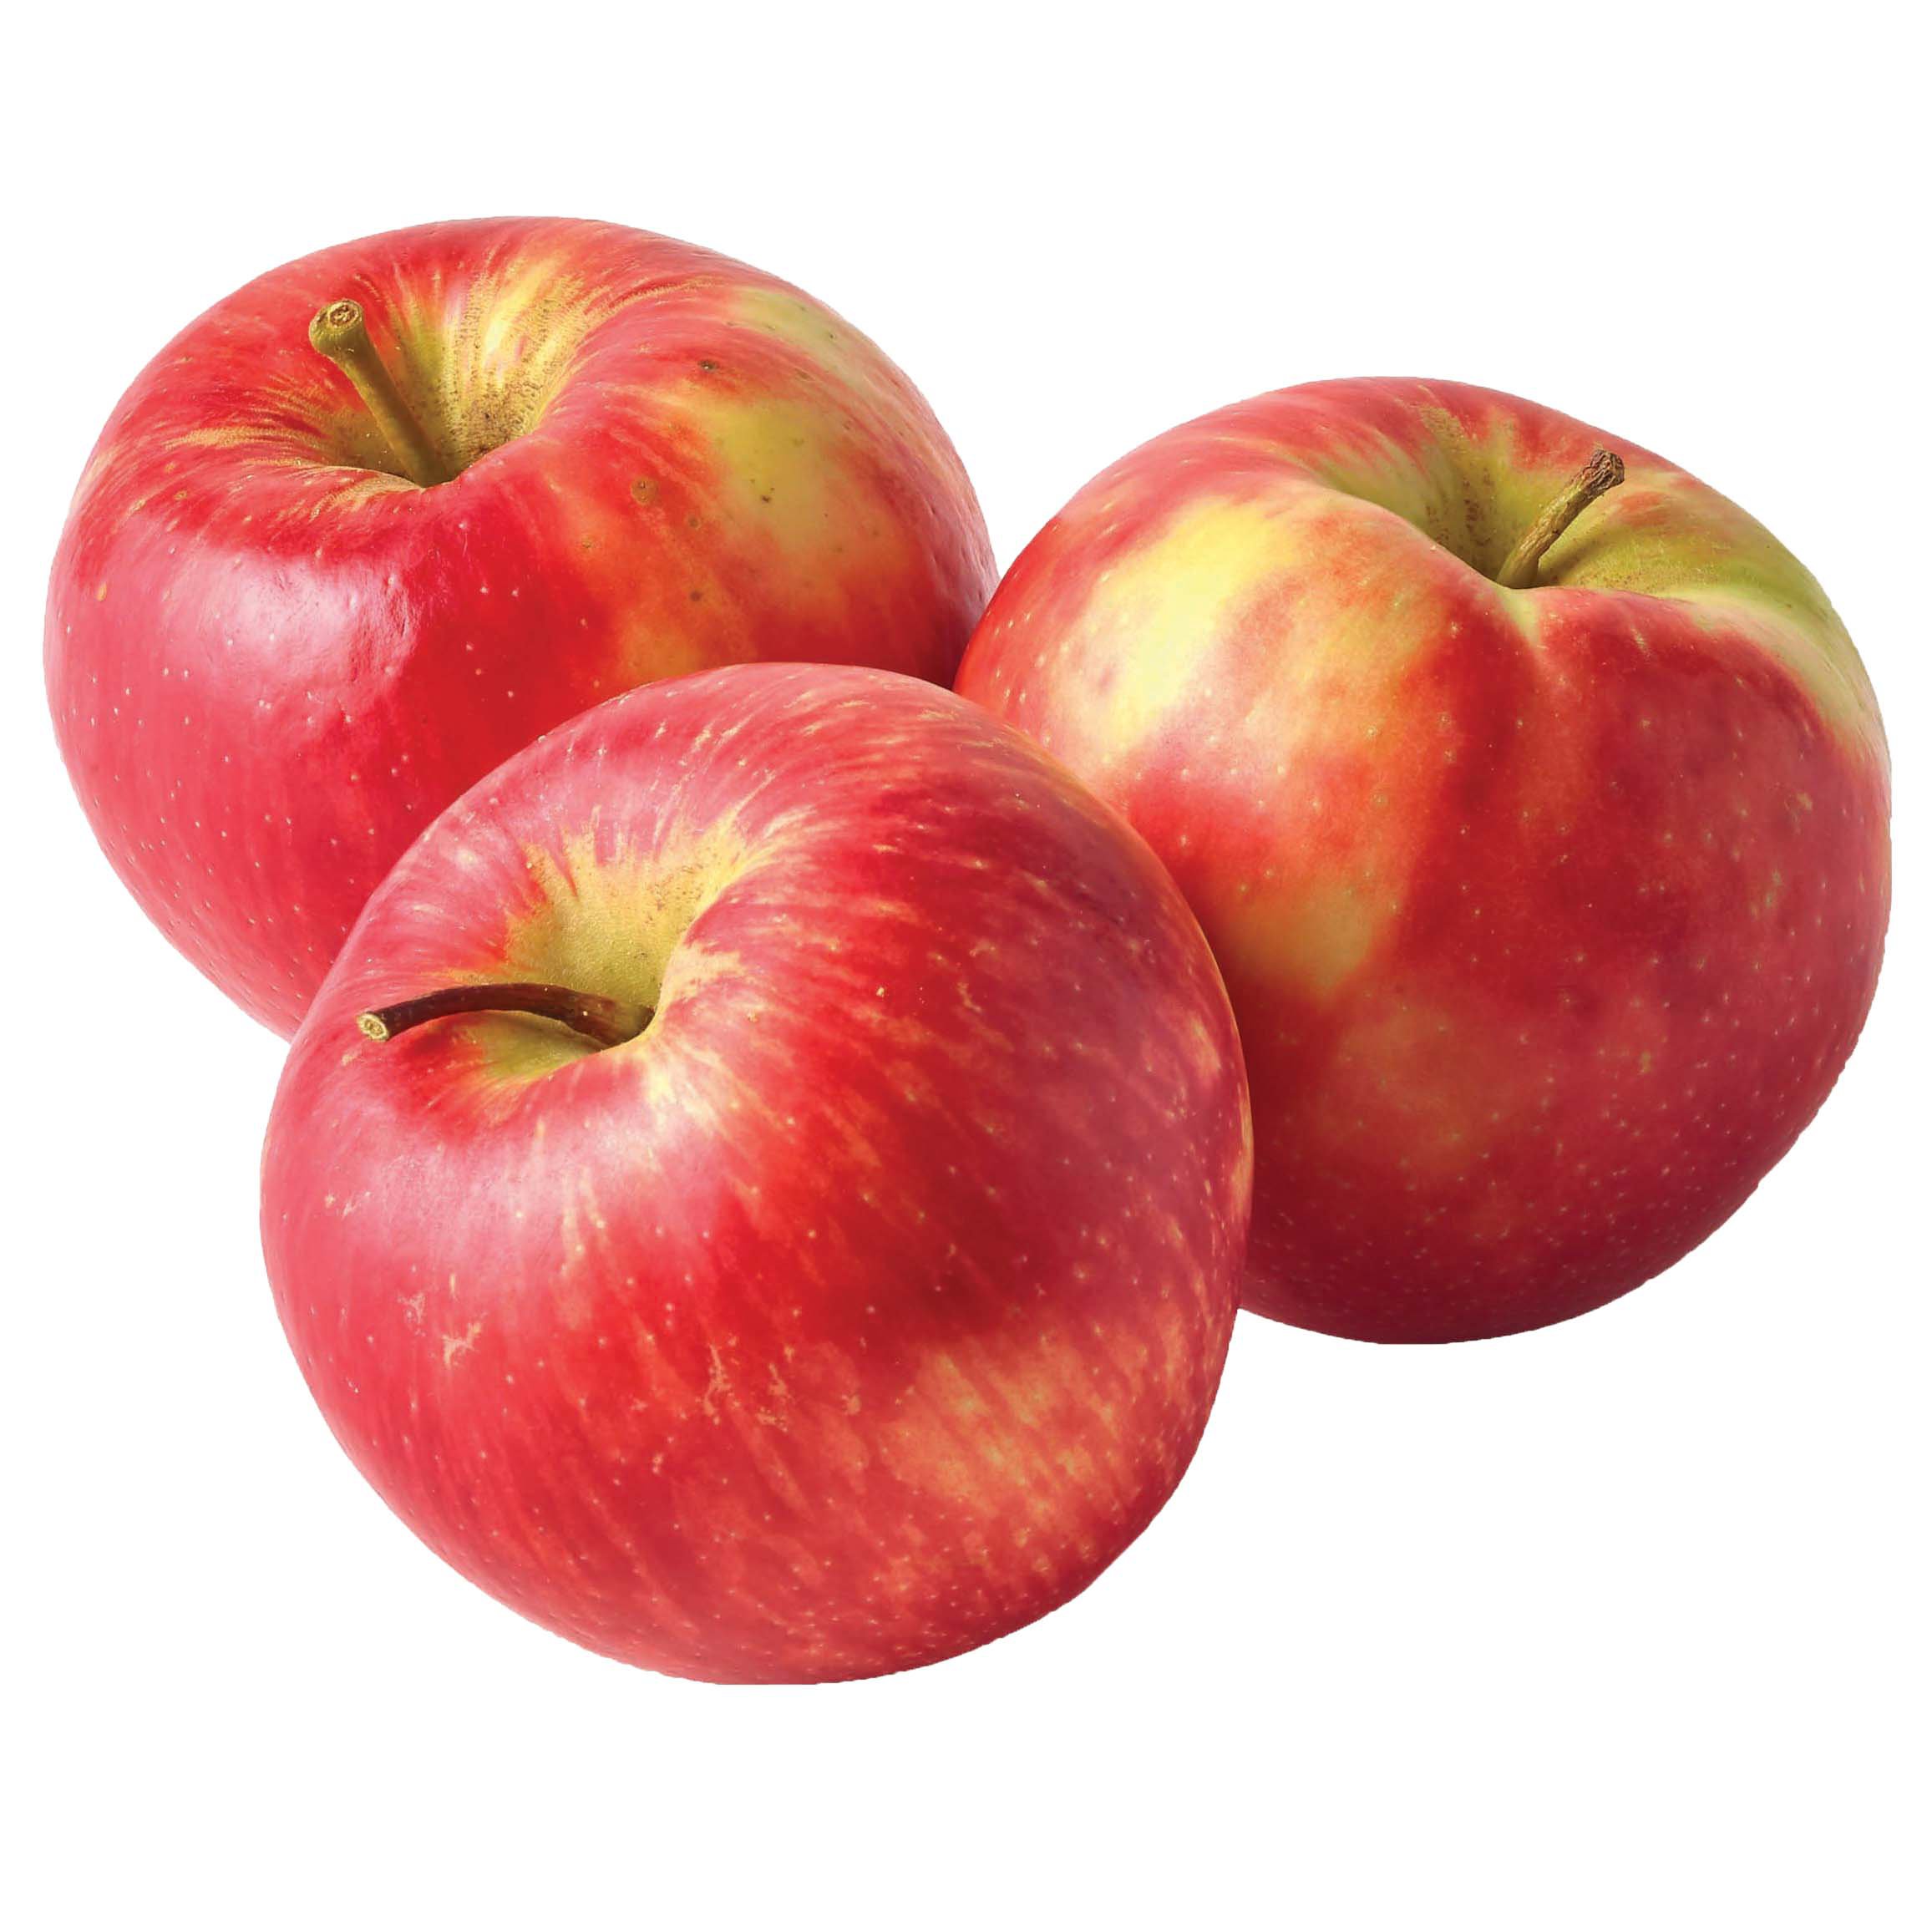 Honeycrisp * - Adam's Apples